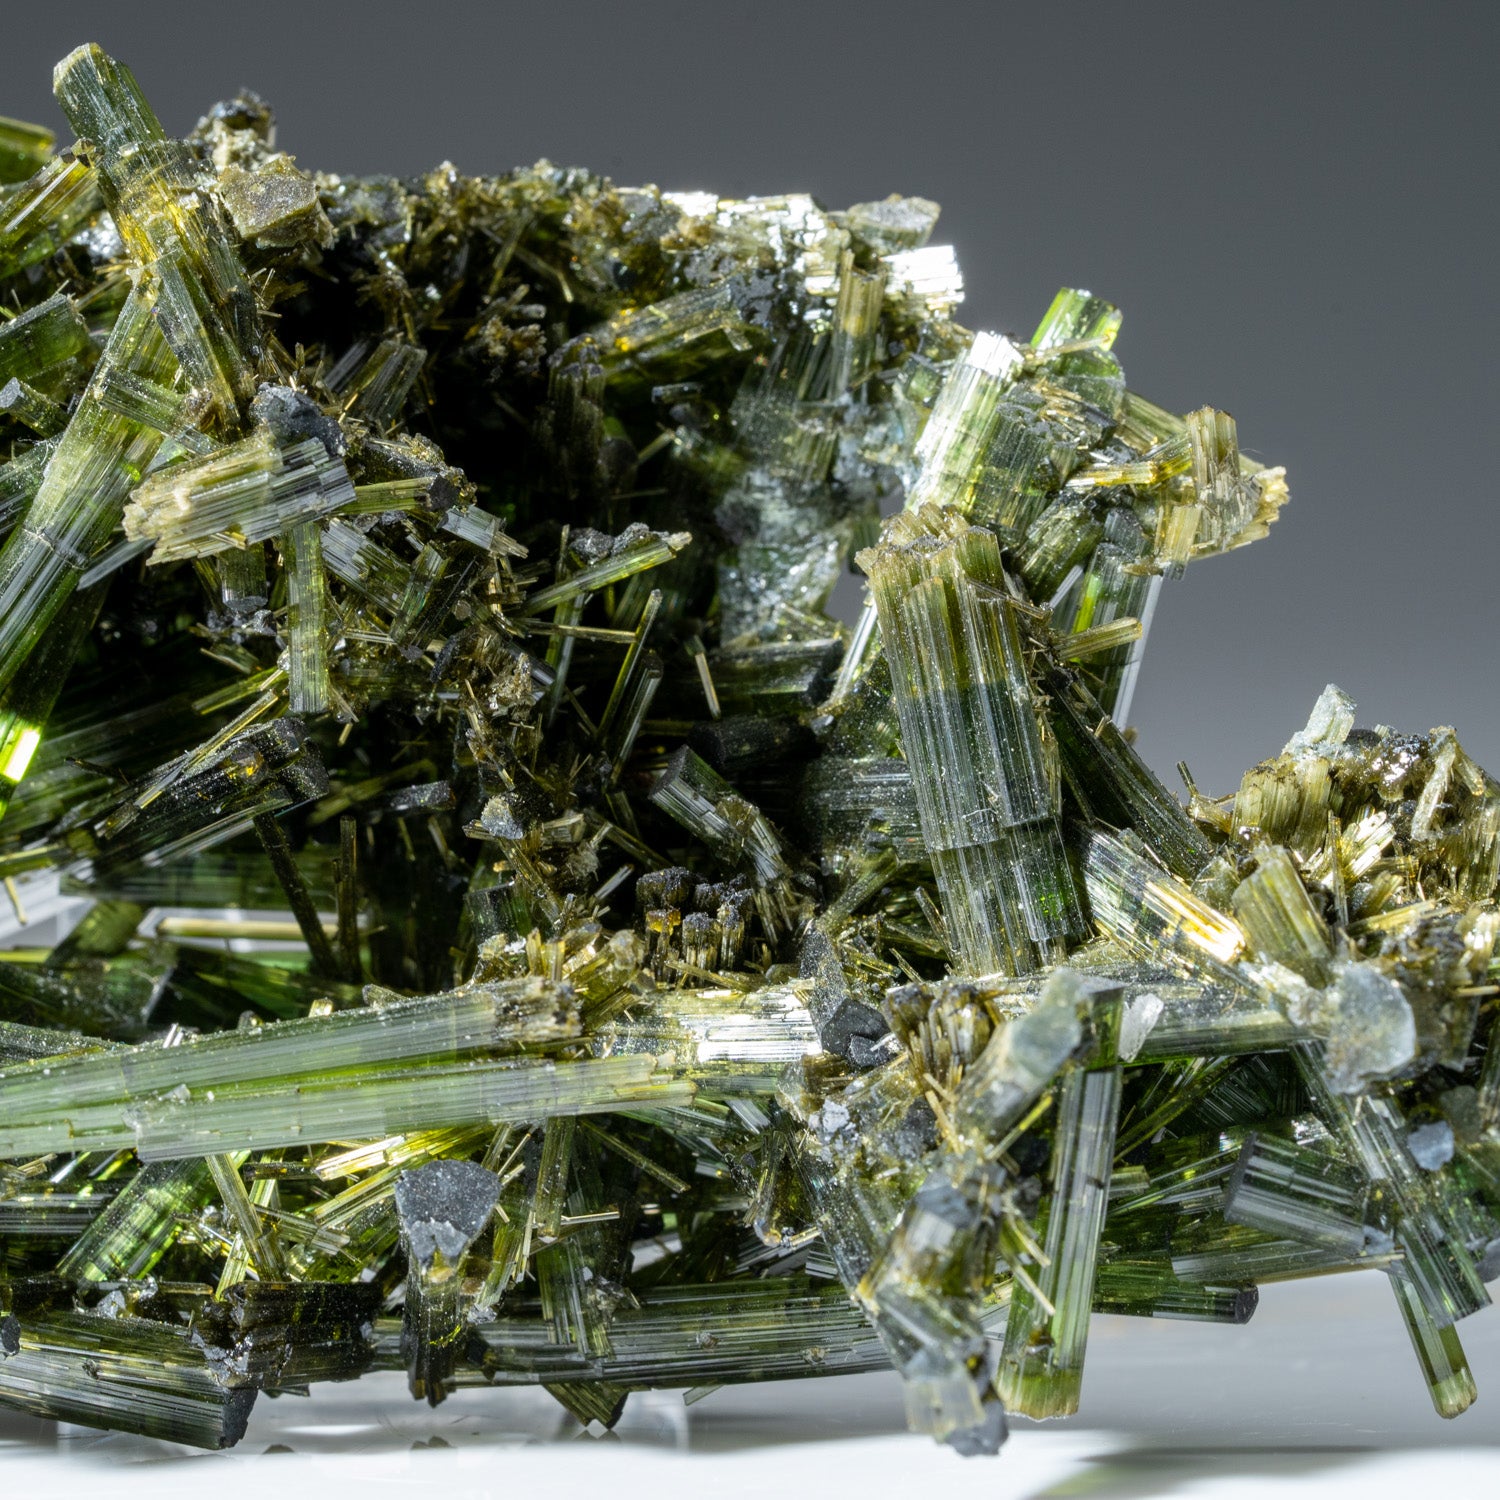 Green Tourmaline Crystal from Cruzeiro Mine, Governador Valadares, Minas Gerais, Brazil